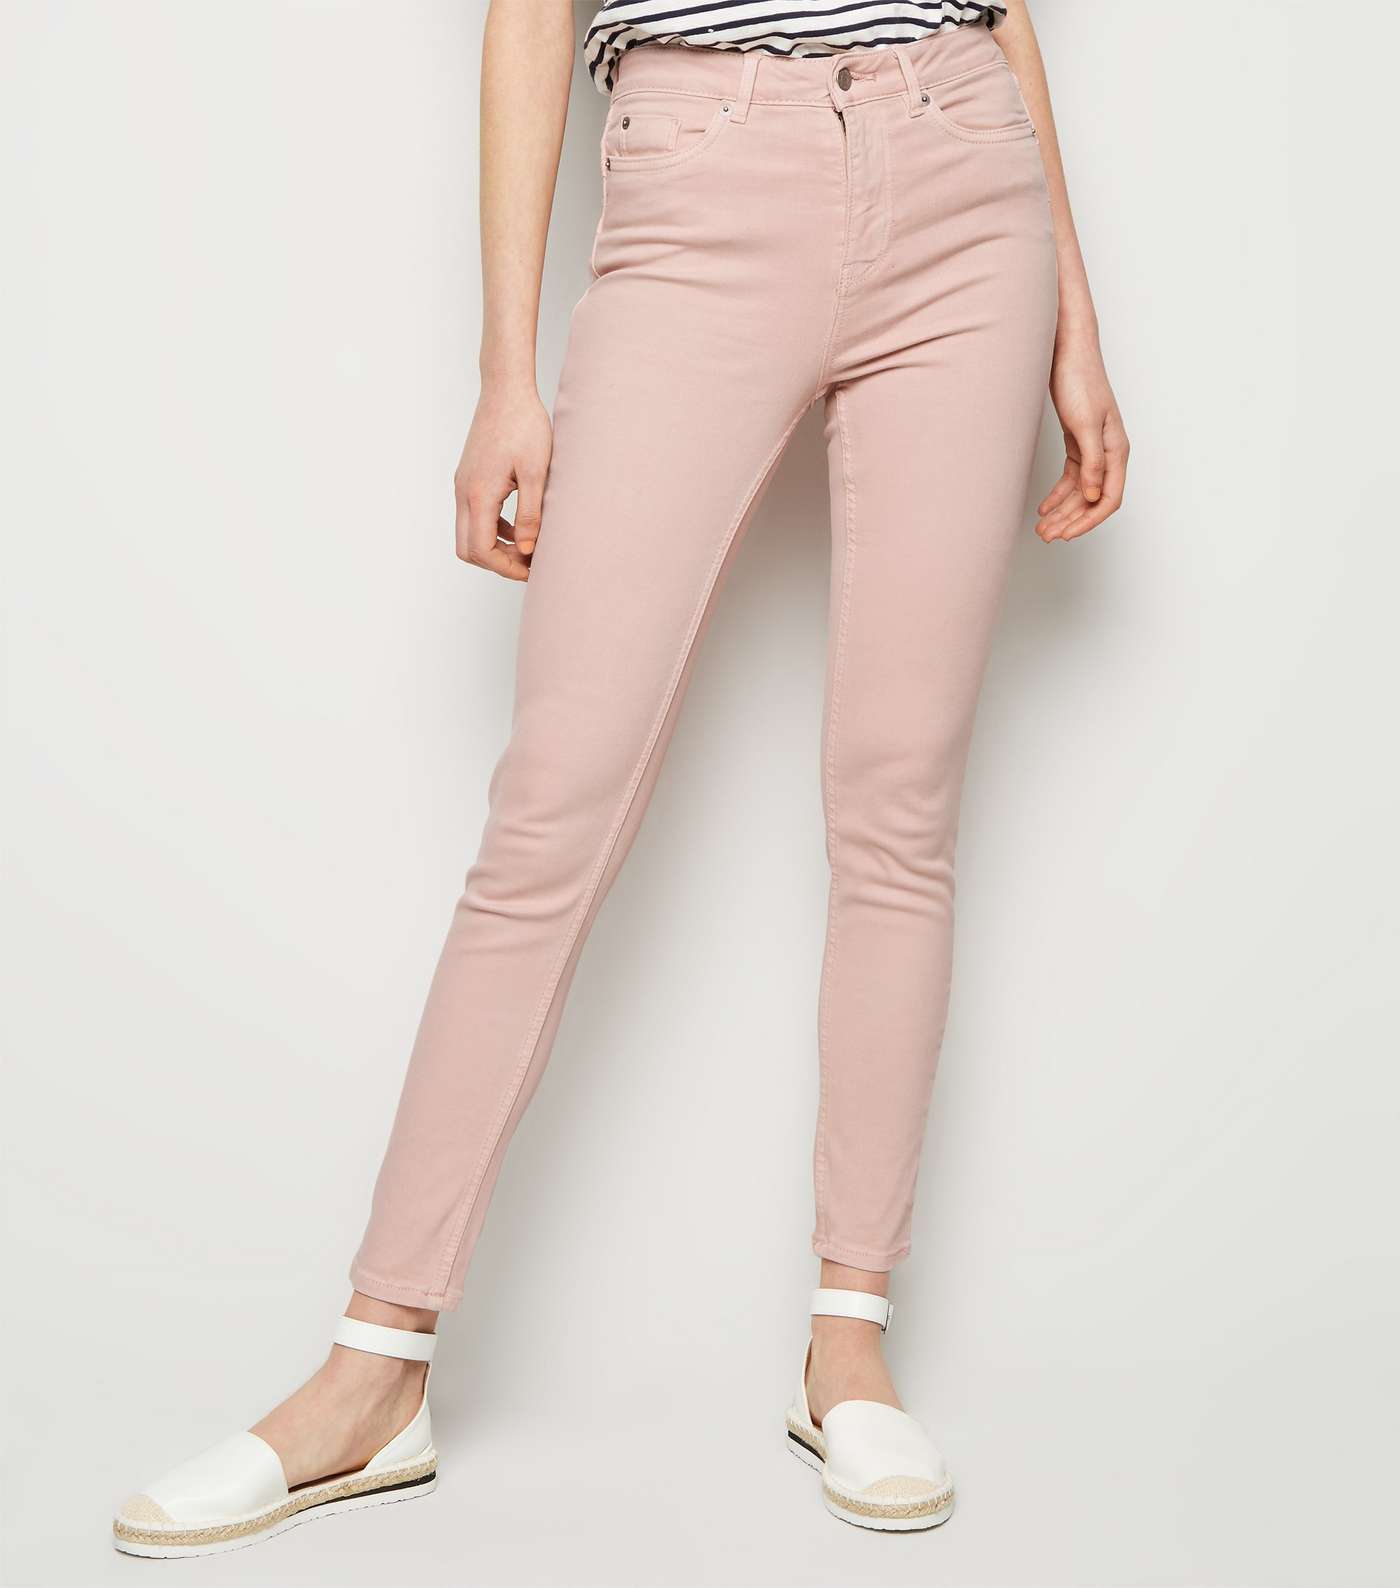 Pink High Waist 'Lift & Shape' Skinny Jeans Image 2